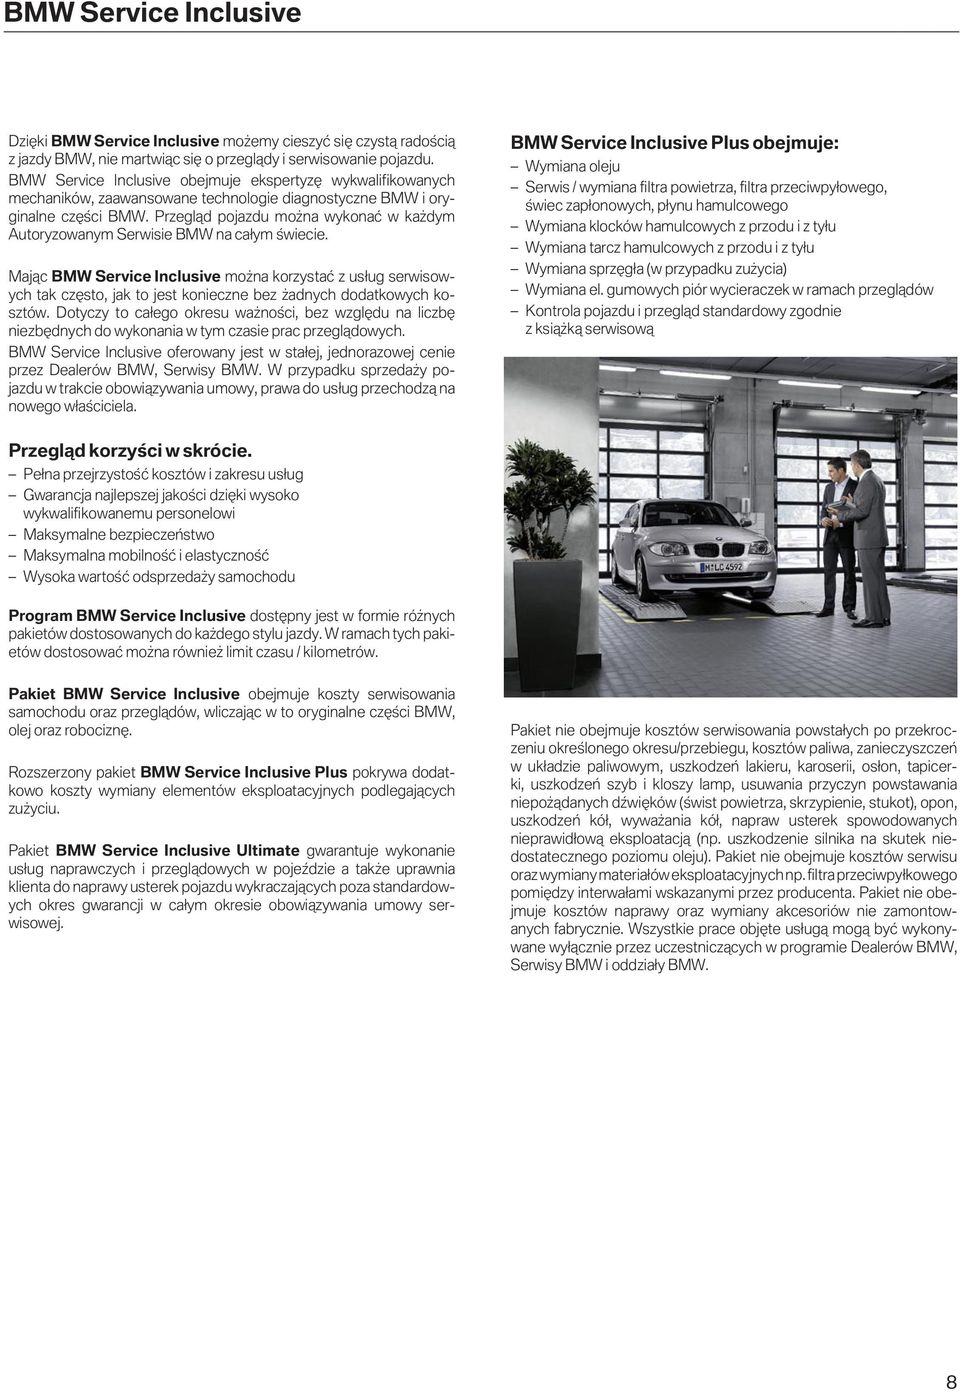 Przegląd pojazdu można wykonać w każdym Autoryzowanym Serwisie BMW na całym świecie.